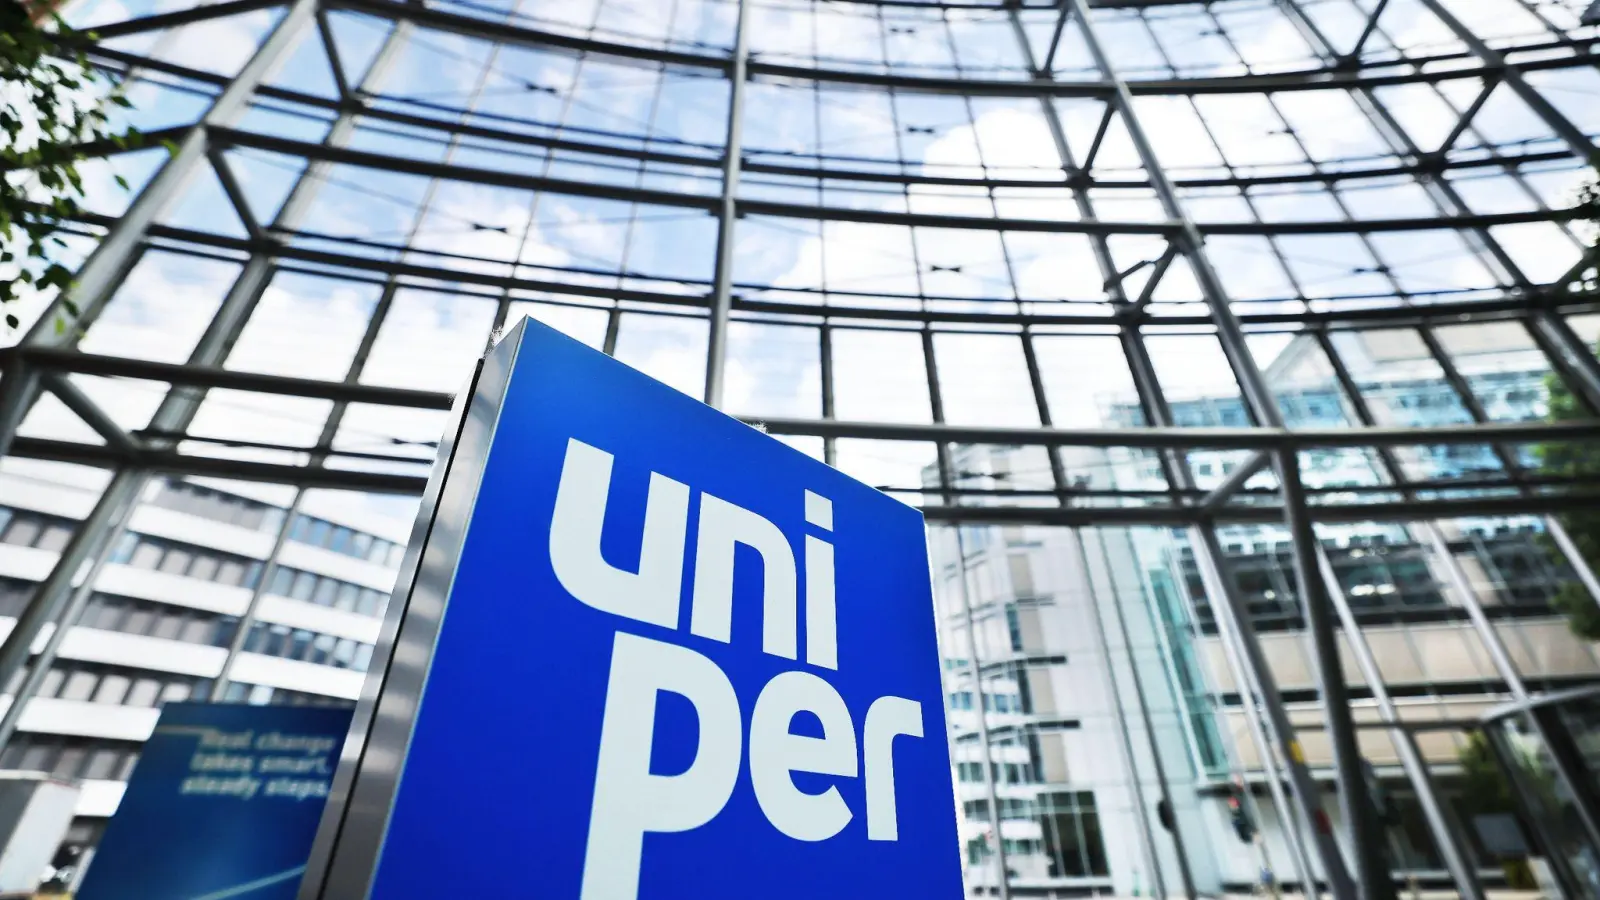 Ein Logo steht im Foyer der Hauptverwaltung des Energieversorgungsunternehmens Uniper in Düsseldorf. Der im Zuge der Gaskrise verstaatlichte Energiekonzern soll wieder privatisiert werden. (Foto: Oliver Berg/dpa)